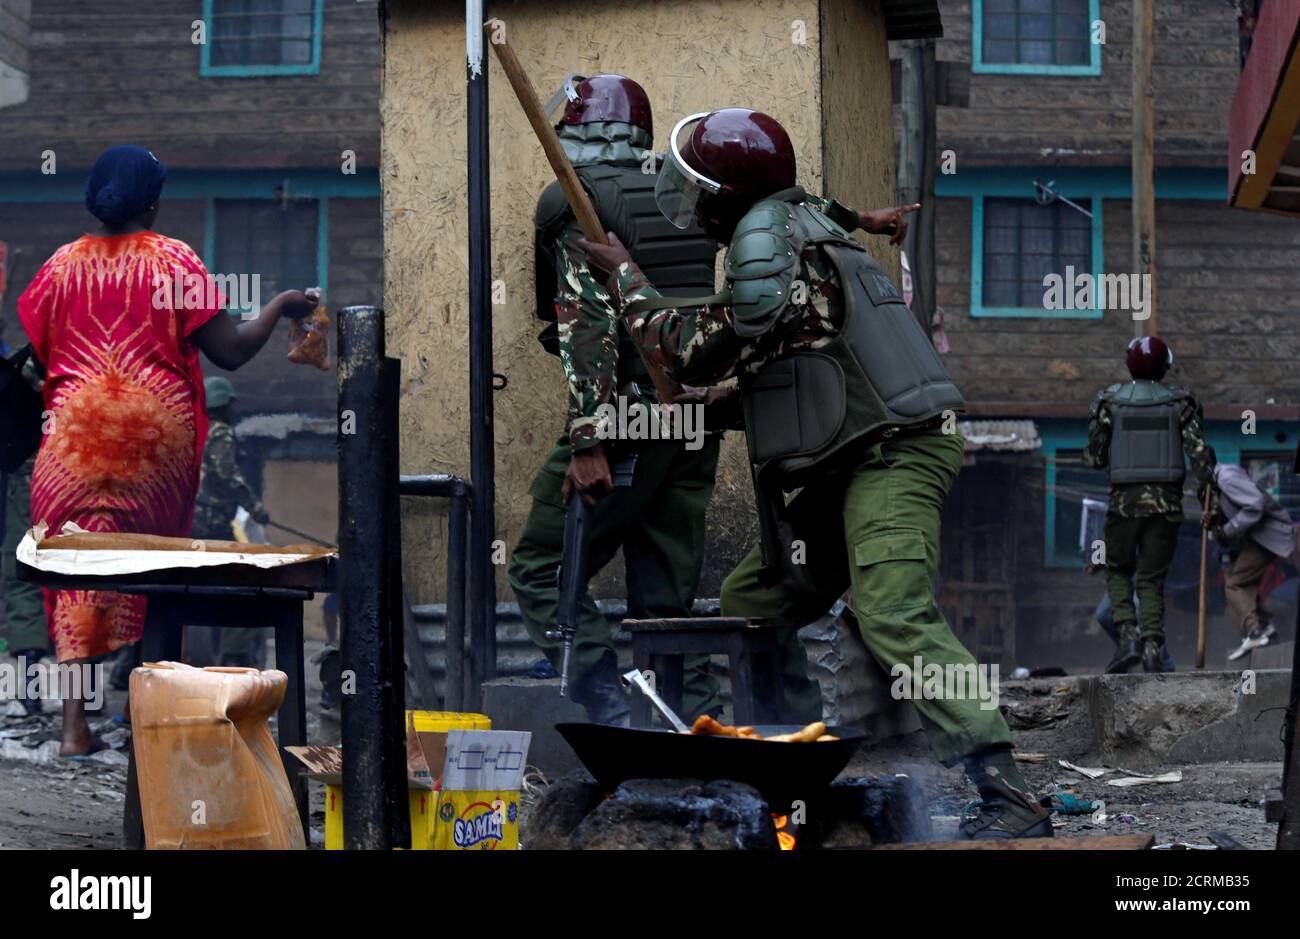 Los residentes huyen mientras los policías antidisturbios se despliegan para dispersar a los manifestantes que apoyan al líder de la oposición Raila Odinga en Mathare, Nairobi, Kenia, 12 de agosto de 2017. REUTERS/Thomas Mukoya Foto de stock